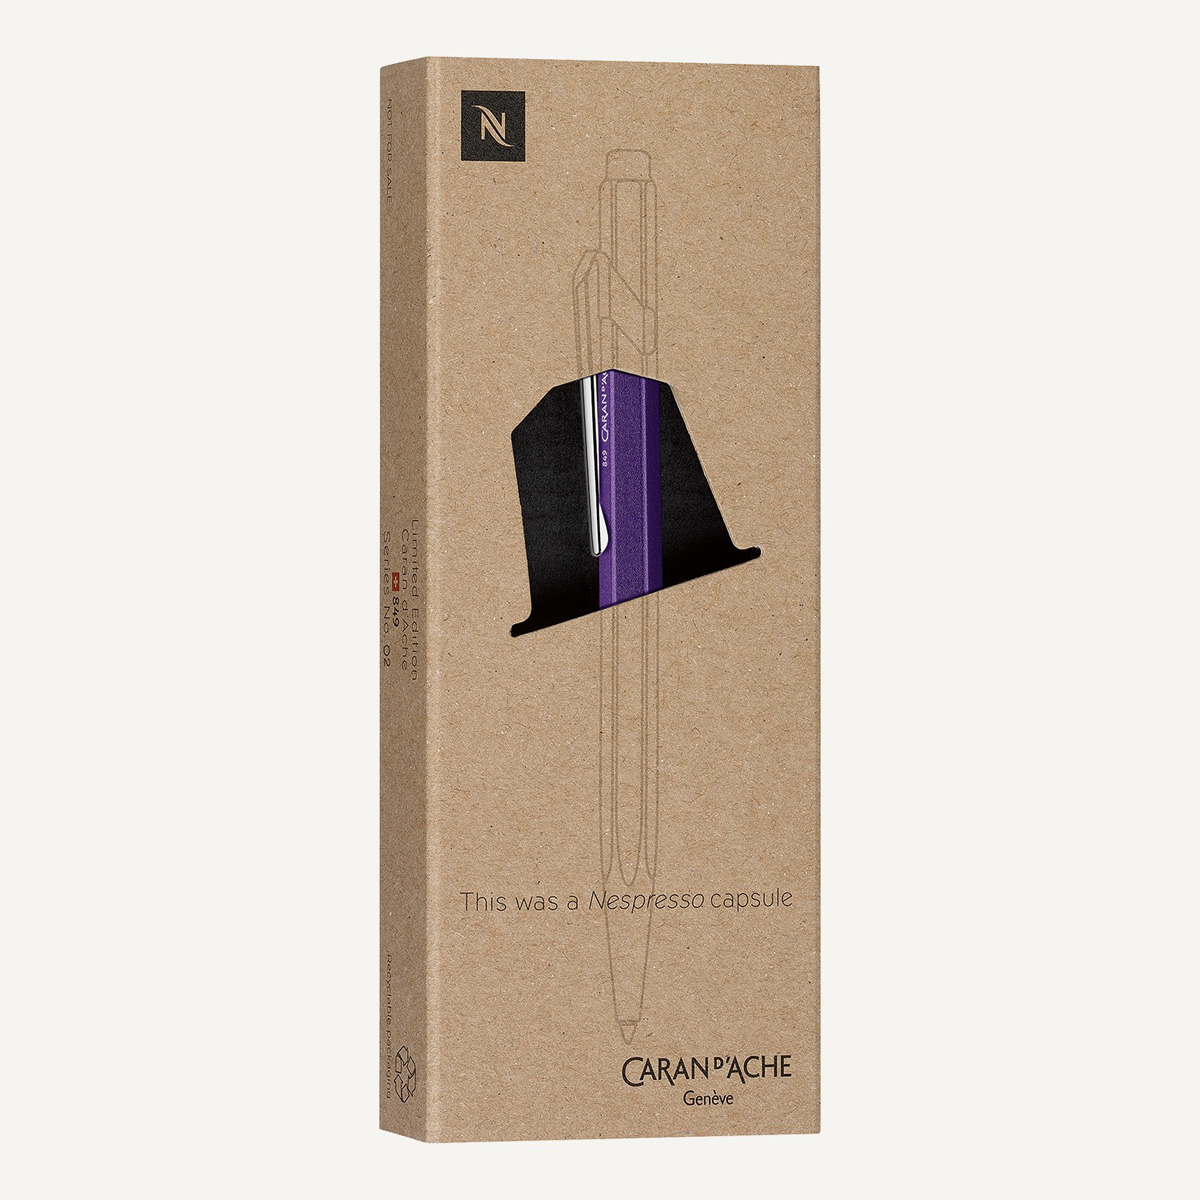 Caran d'Ache - 849 - Nespresso Edizione 3 - Limited Edition - Penna a sfera